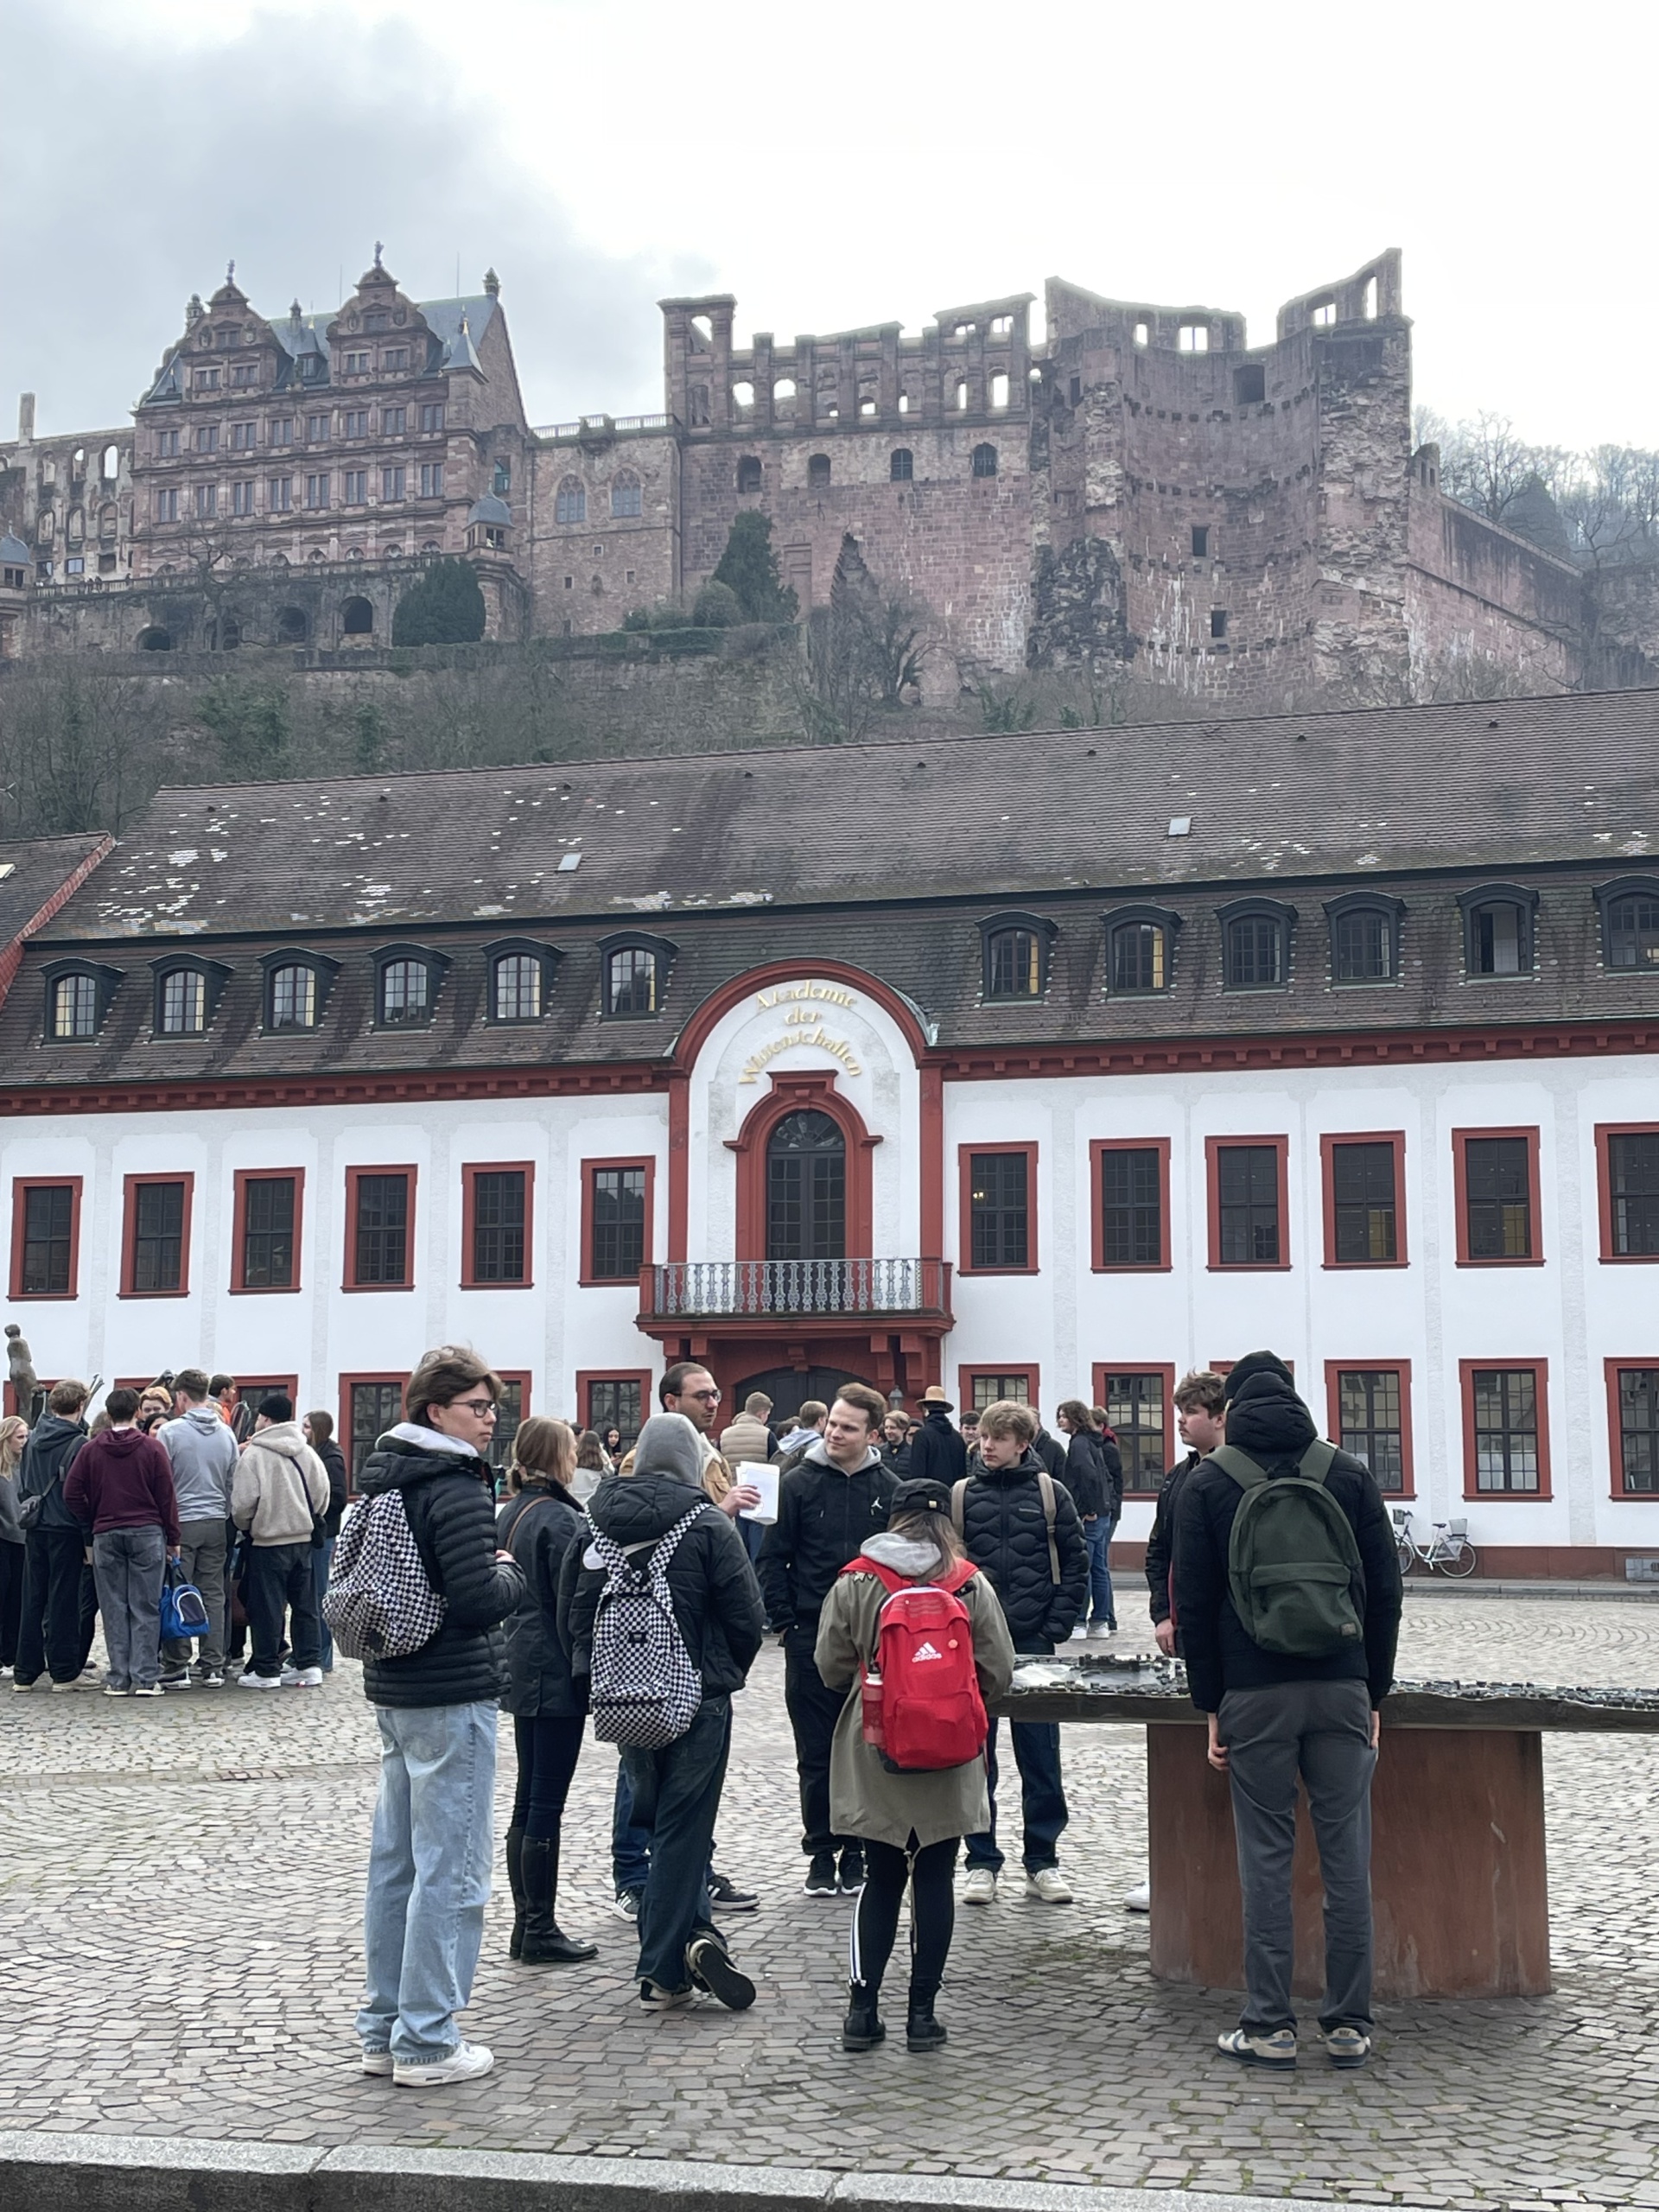 Joukko nuoria Mosbachissa Saksassa, taustalla suuri rakennus ja sen yläpuolella vanhat muurit.